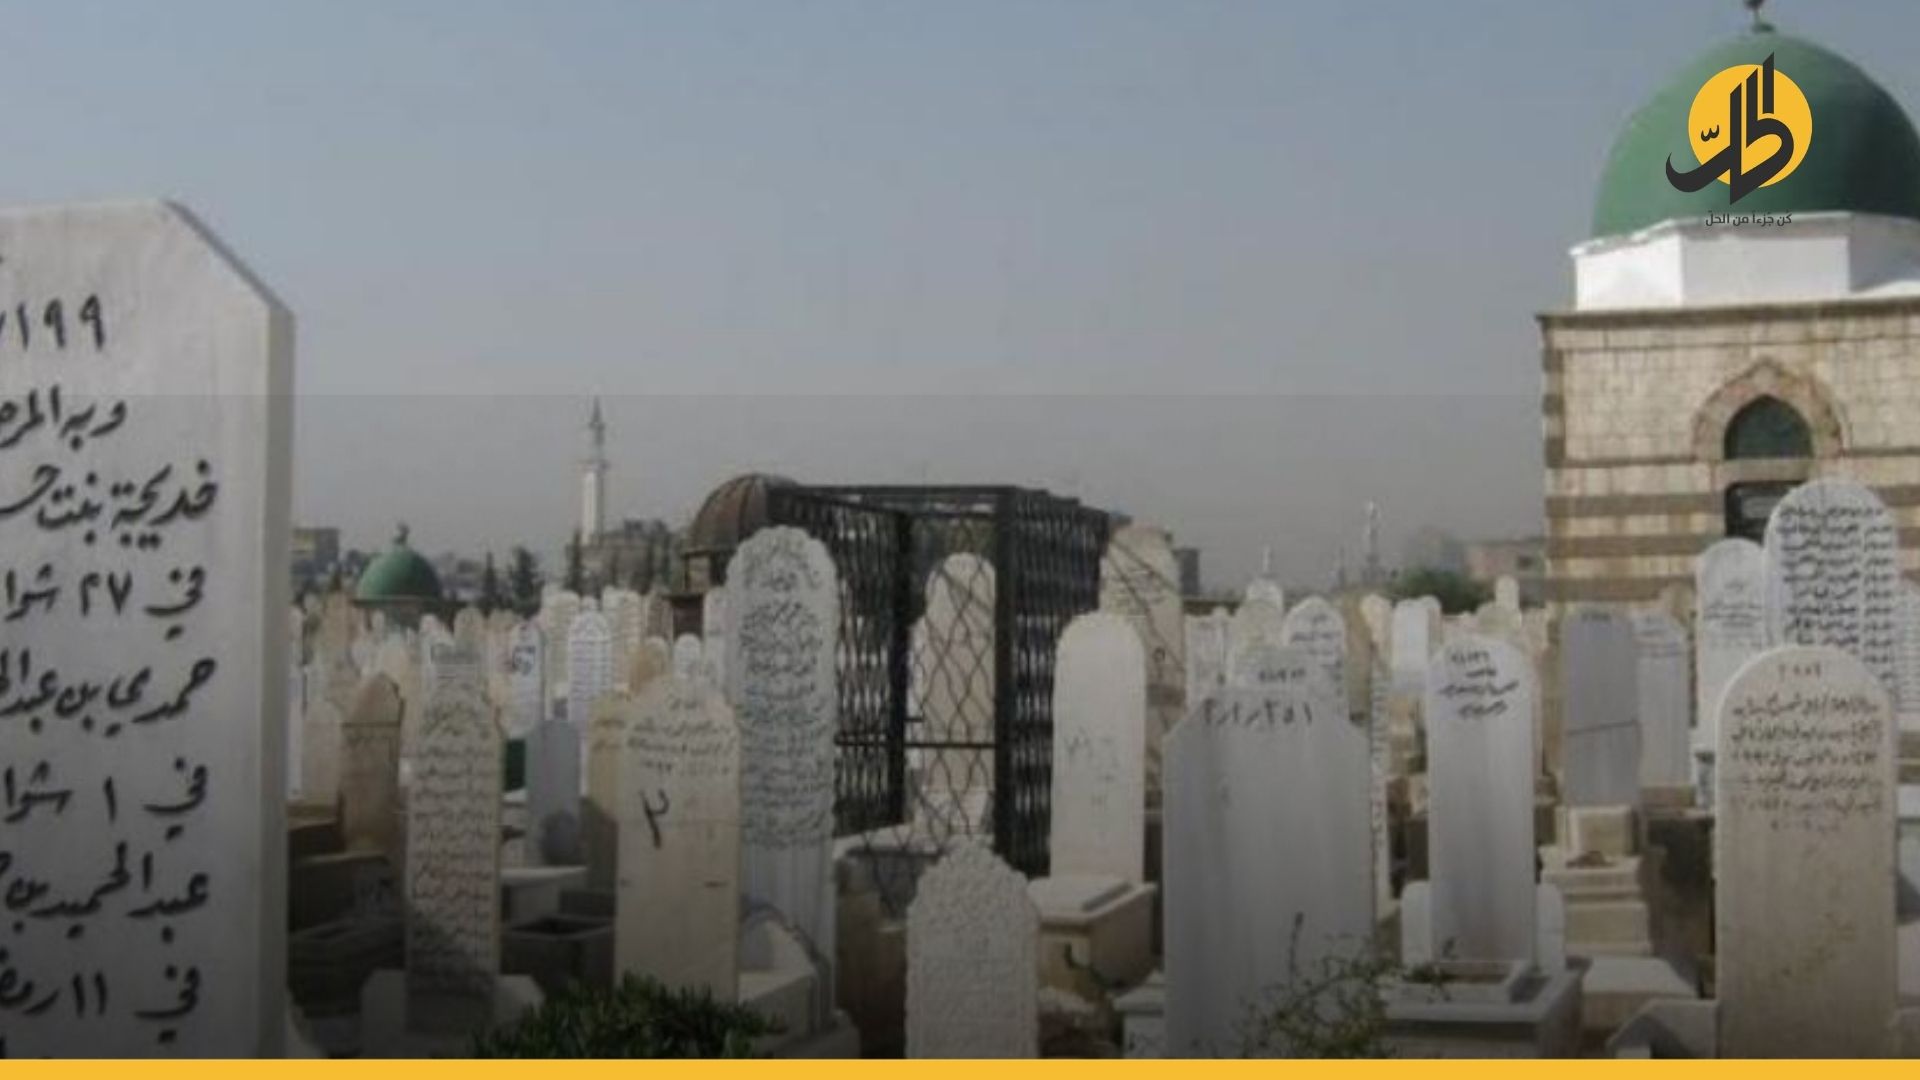 دمشق.. القبر بـ 10 ملايين ليرة ودفن المتوفى بكورونا له سعرٌ خاص